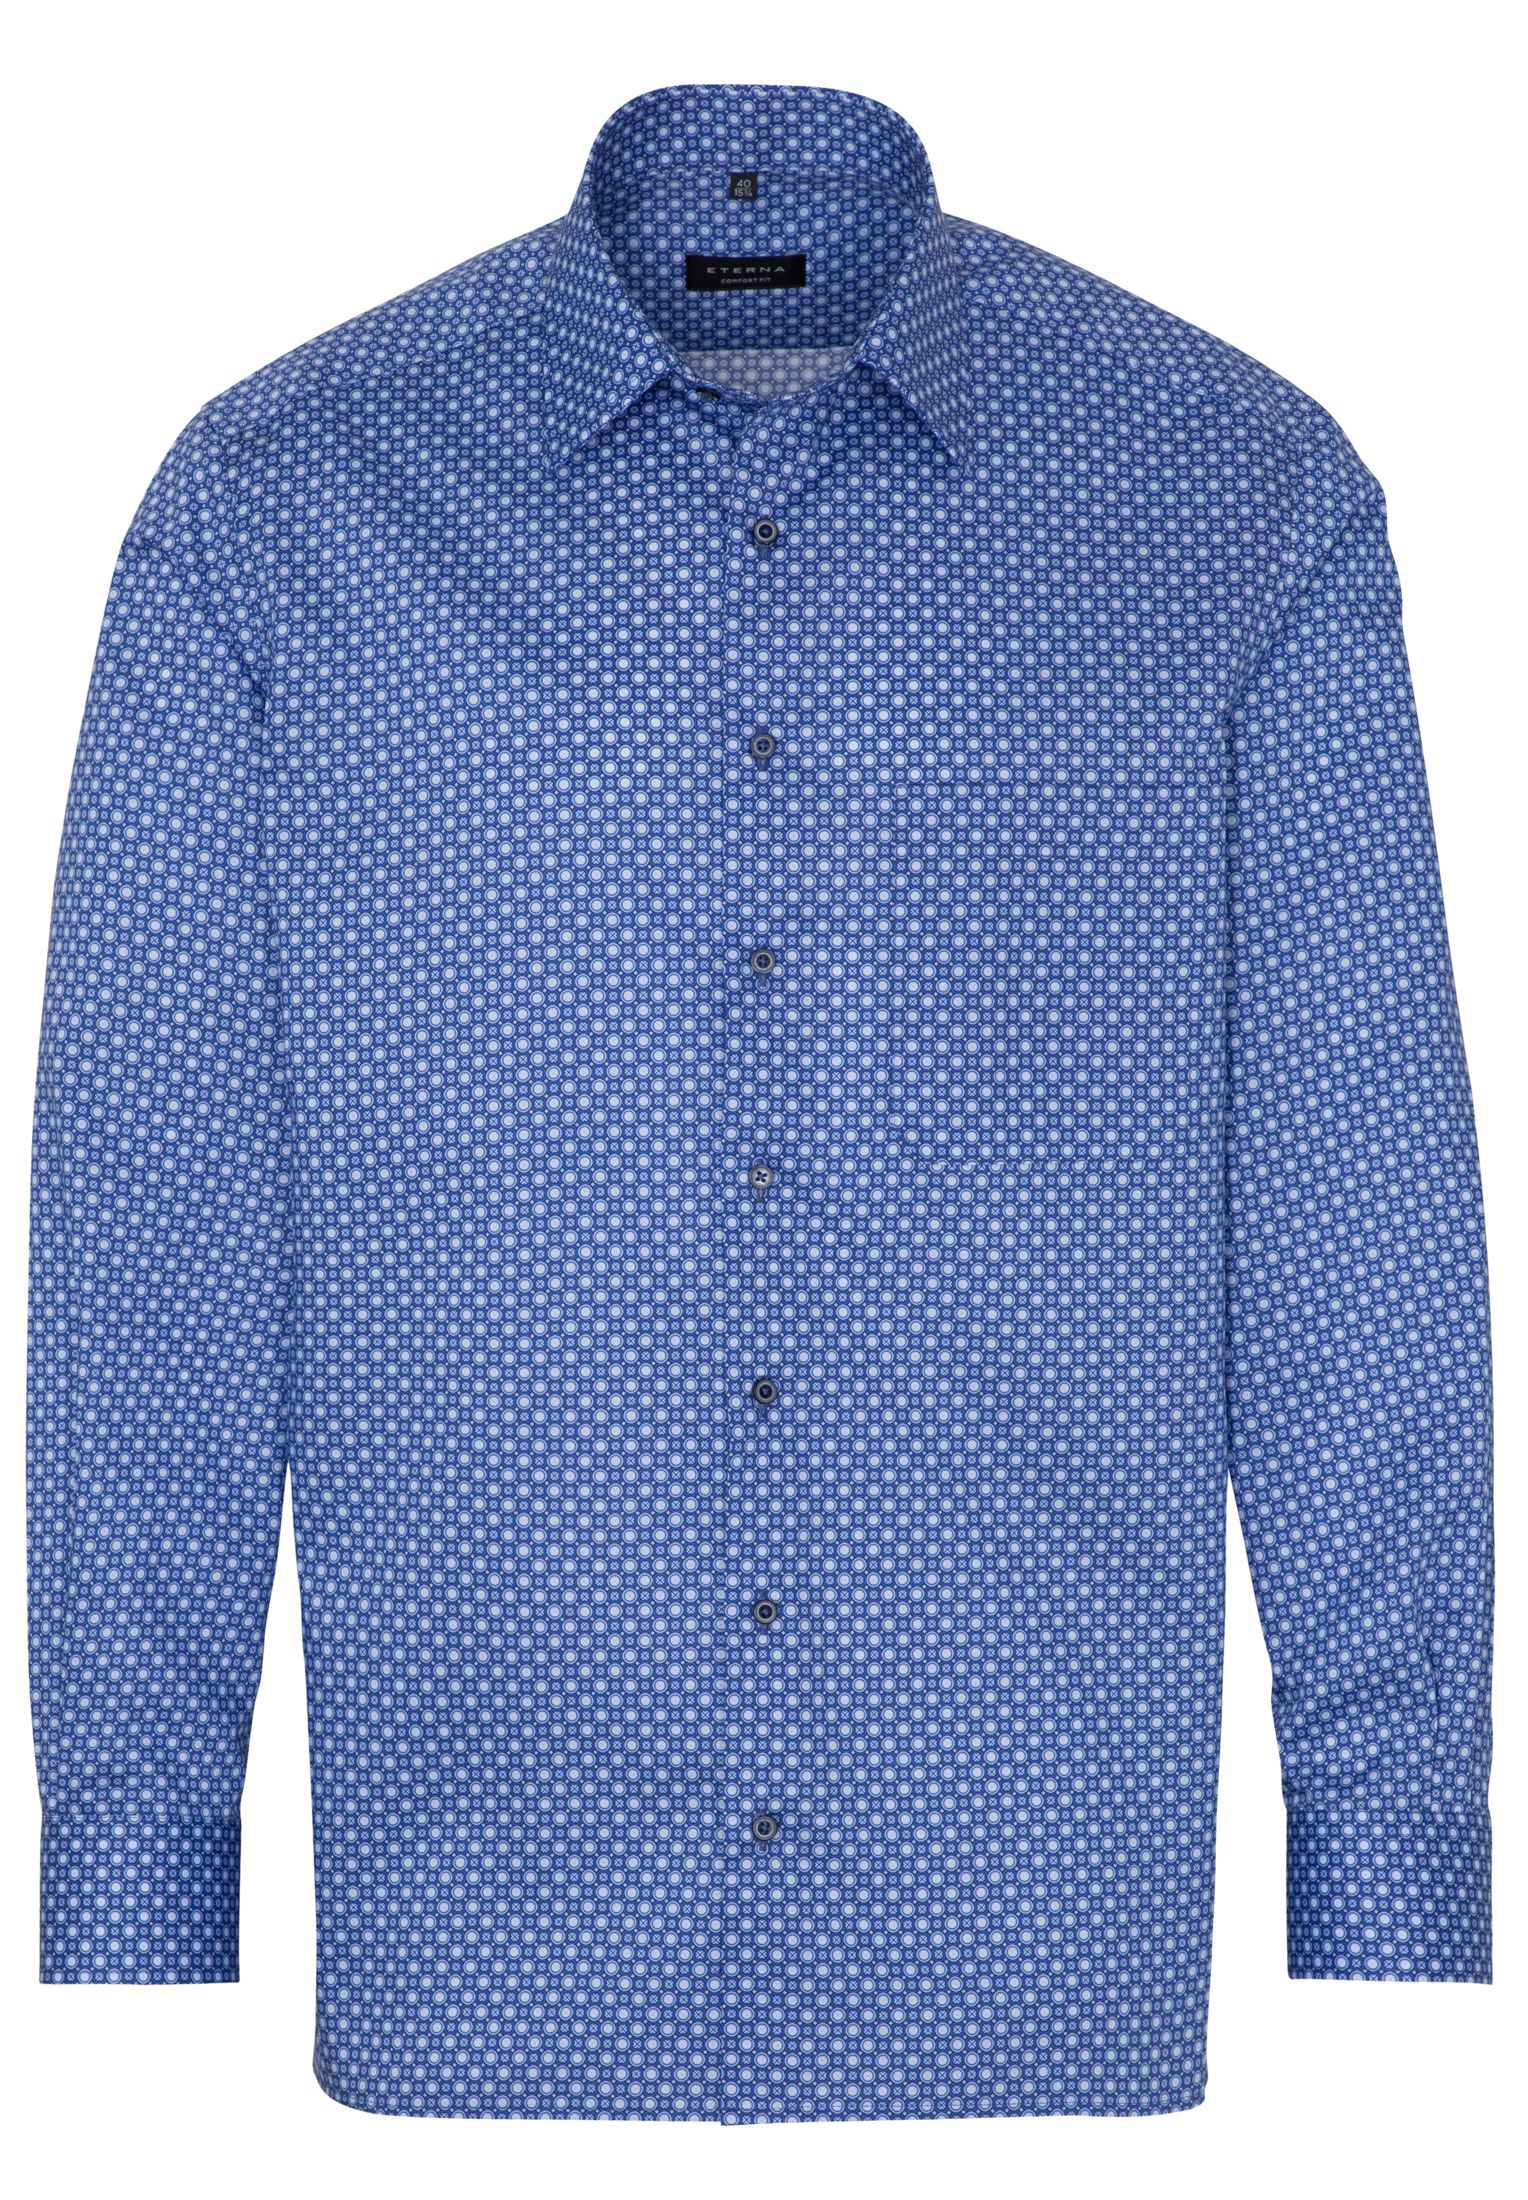 Рубашка мужская ETERNA 3425-16-E18E синяя 40